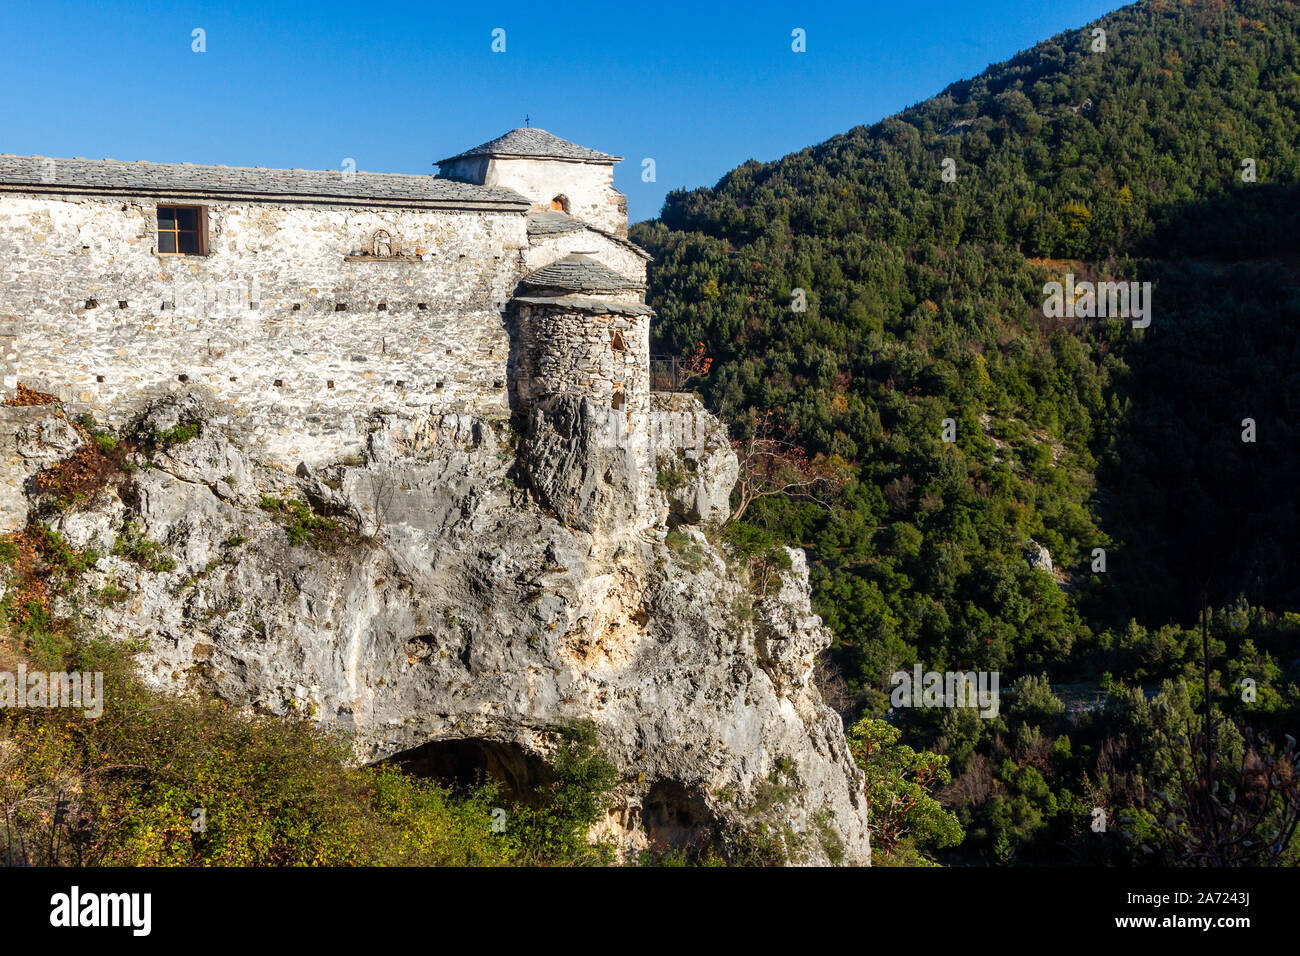 La chiesa del monastero abbandonato di Agia Triada, appesa sopra una rupe, sulle pendici del Monte Olimpo, Pieria, Grecia. Foto Stock